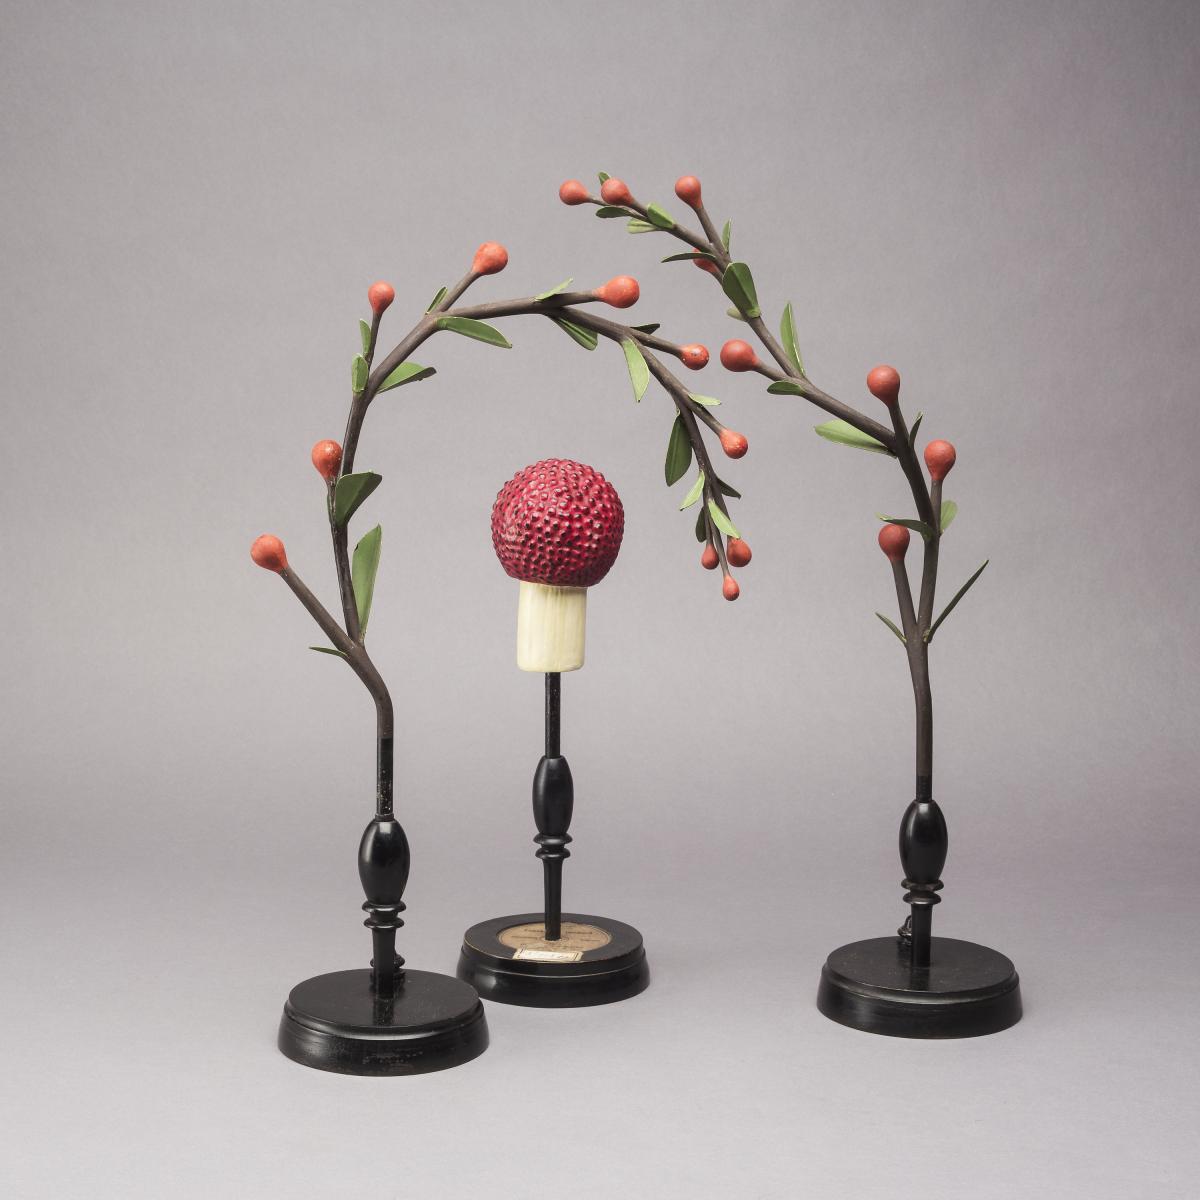 Brendel Botanical Models